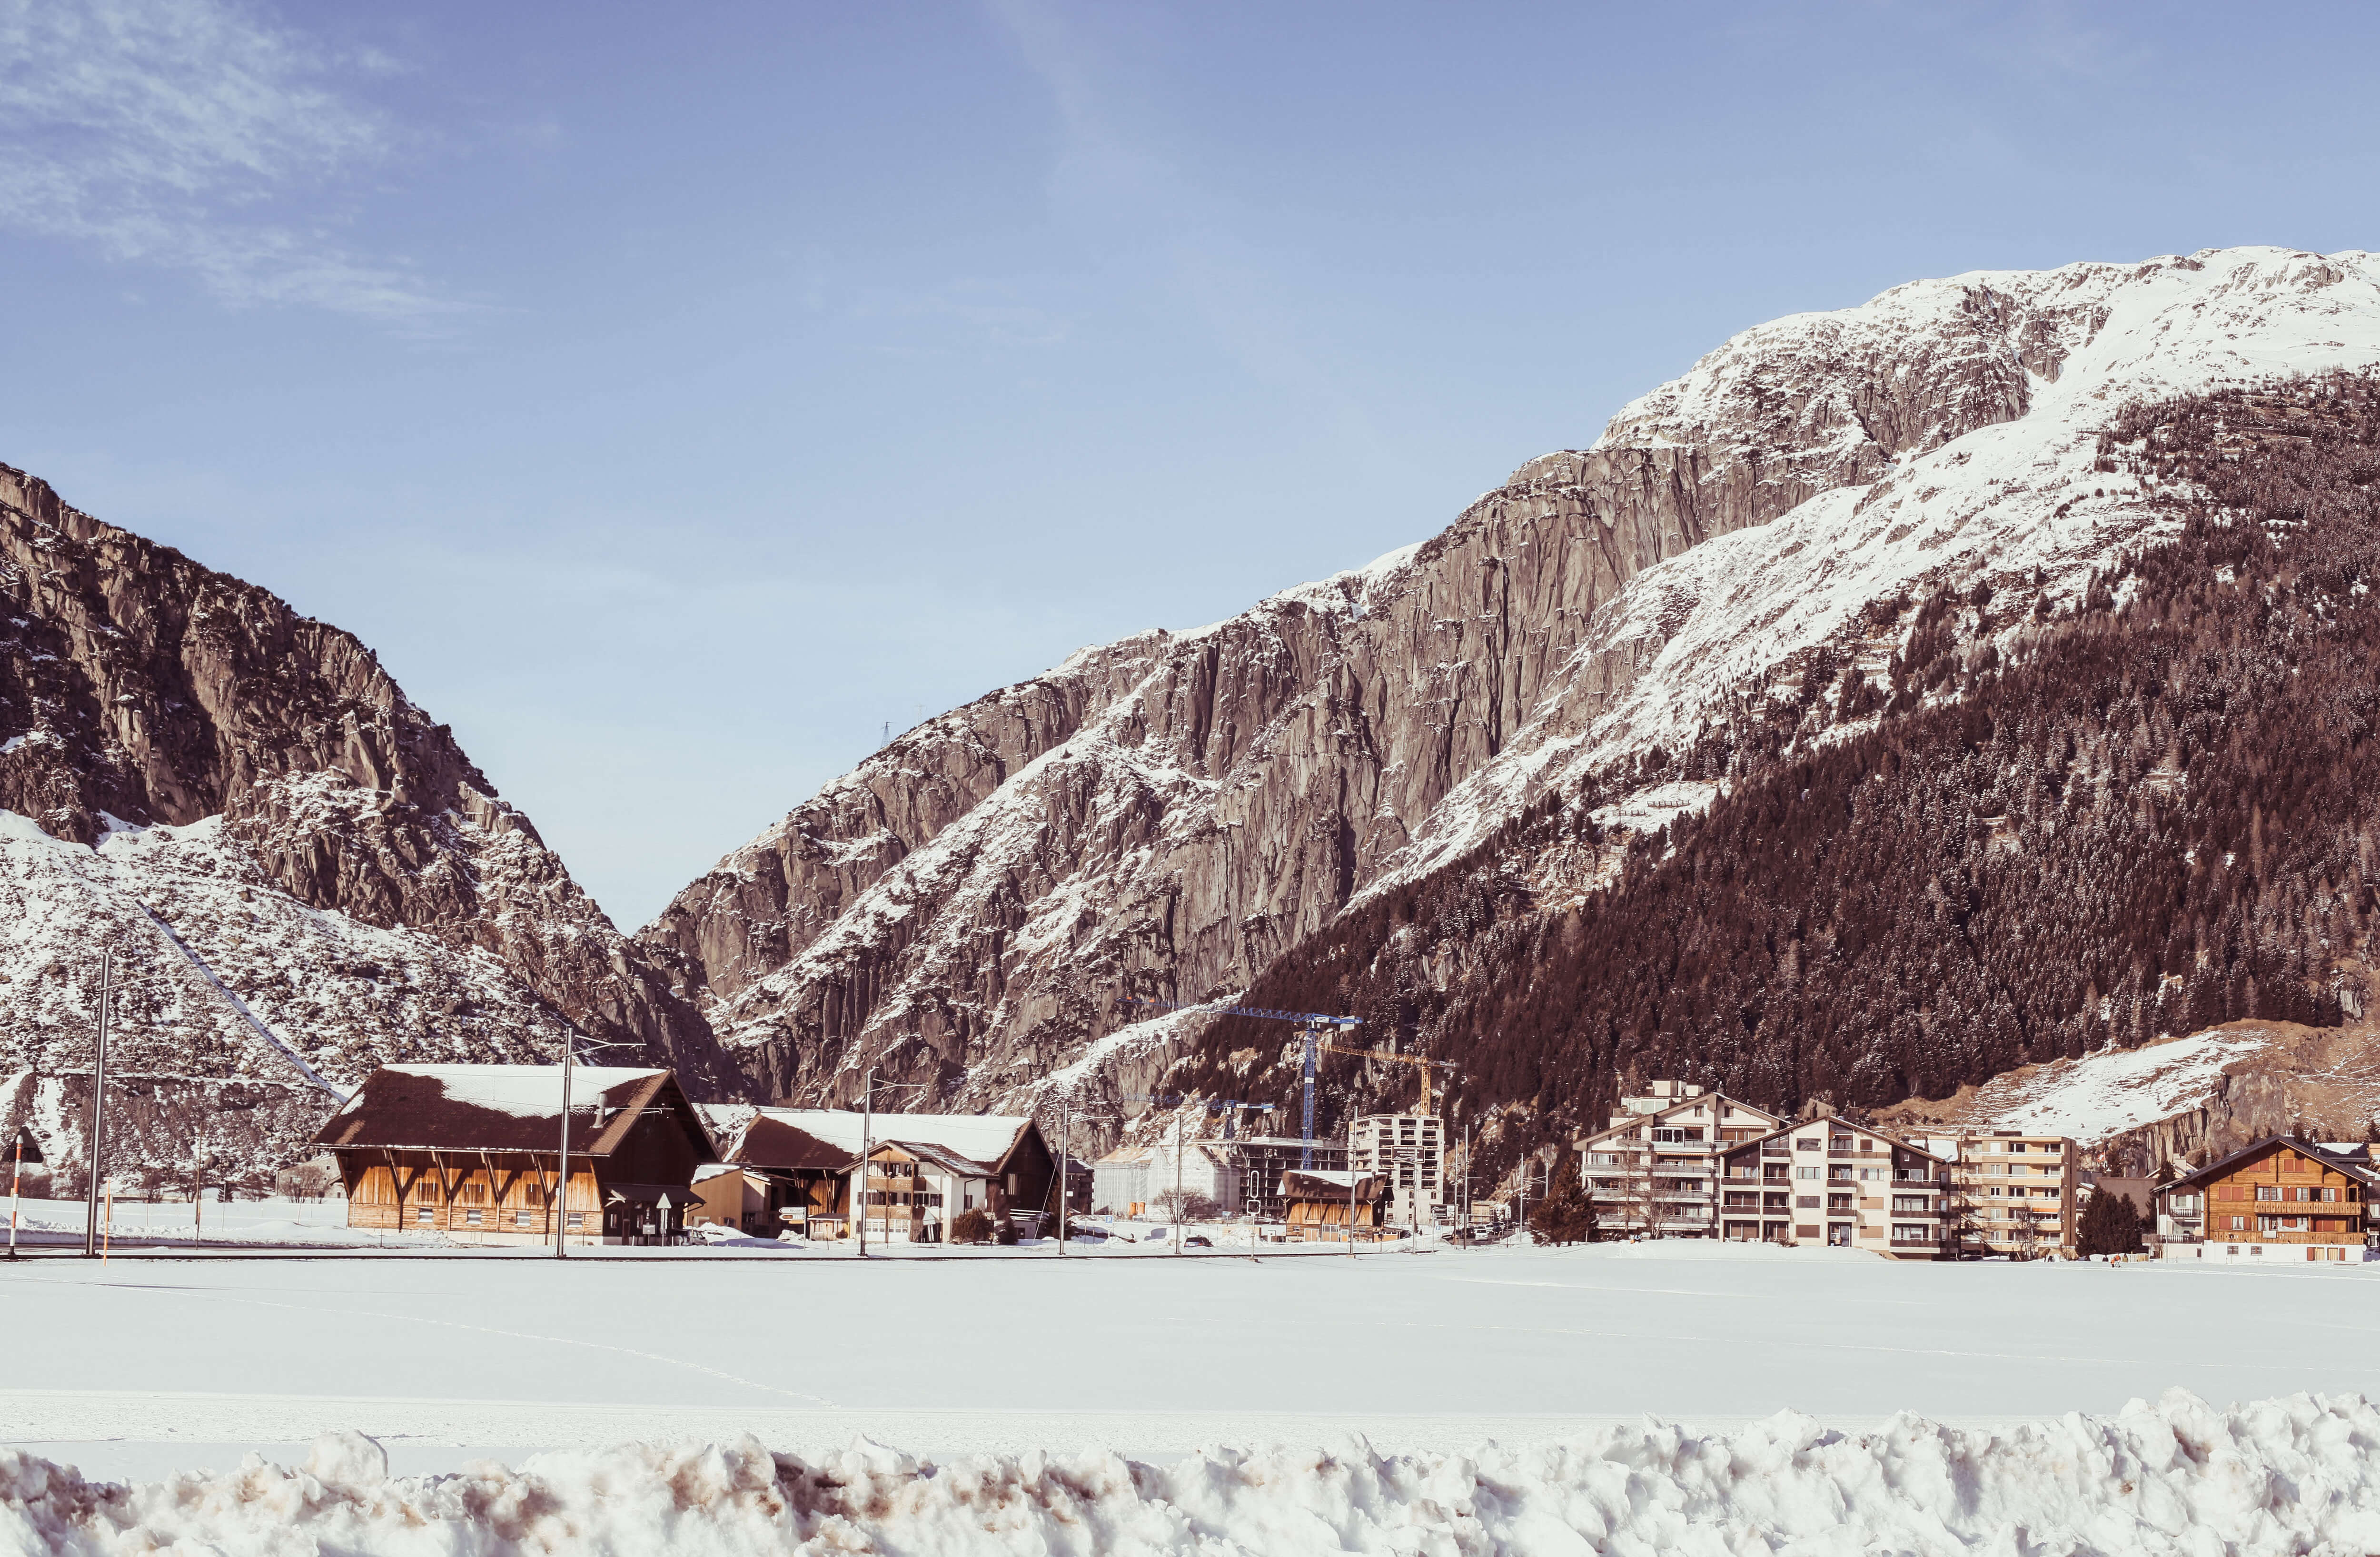 Switzerland's remote alpine village of andermatt